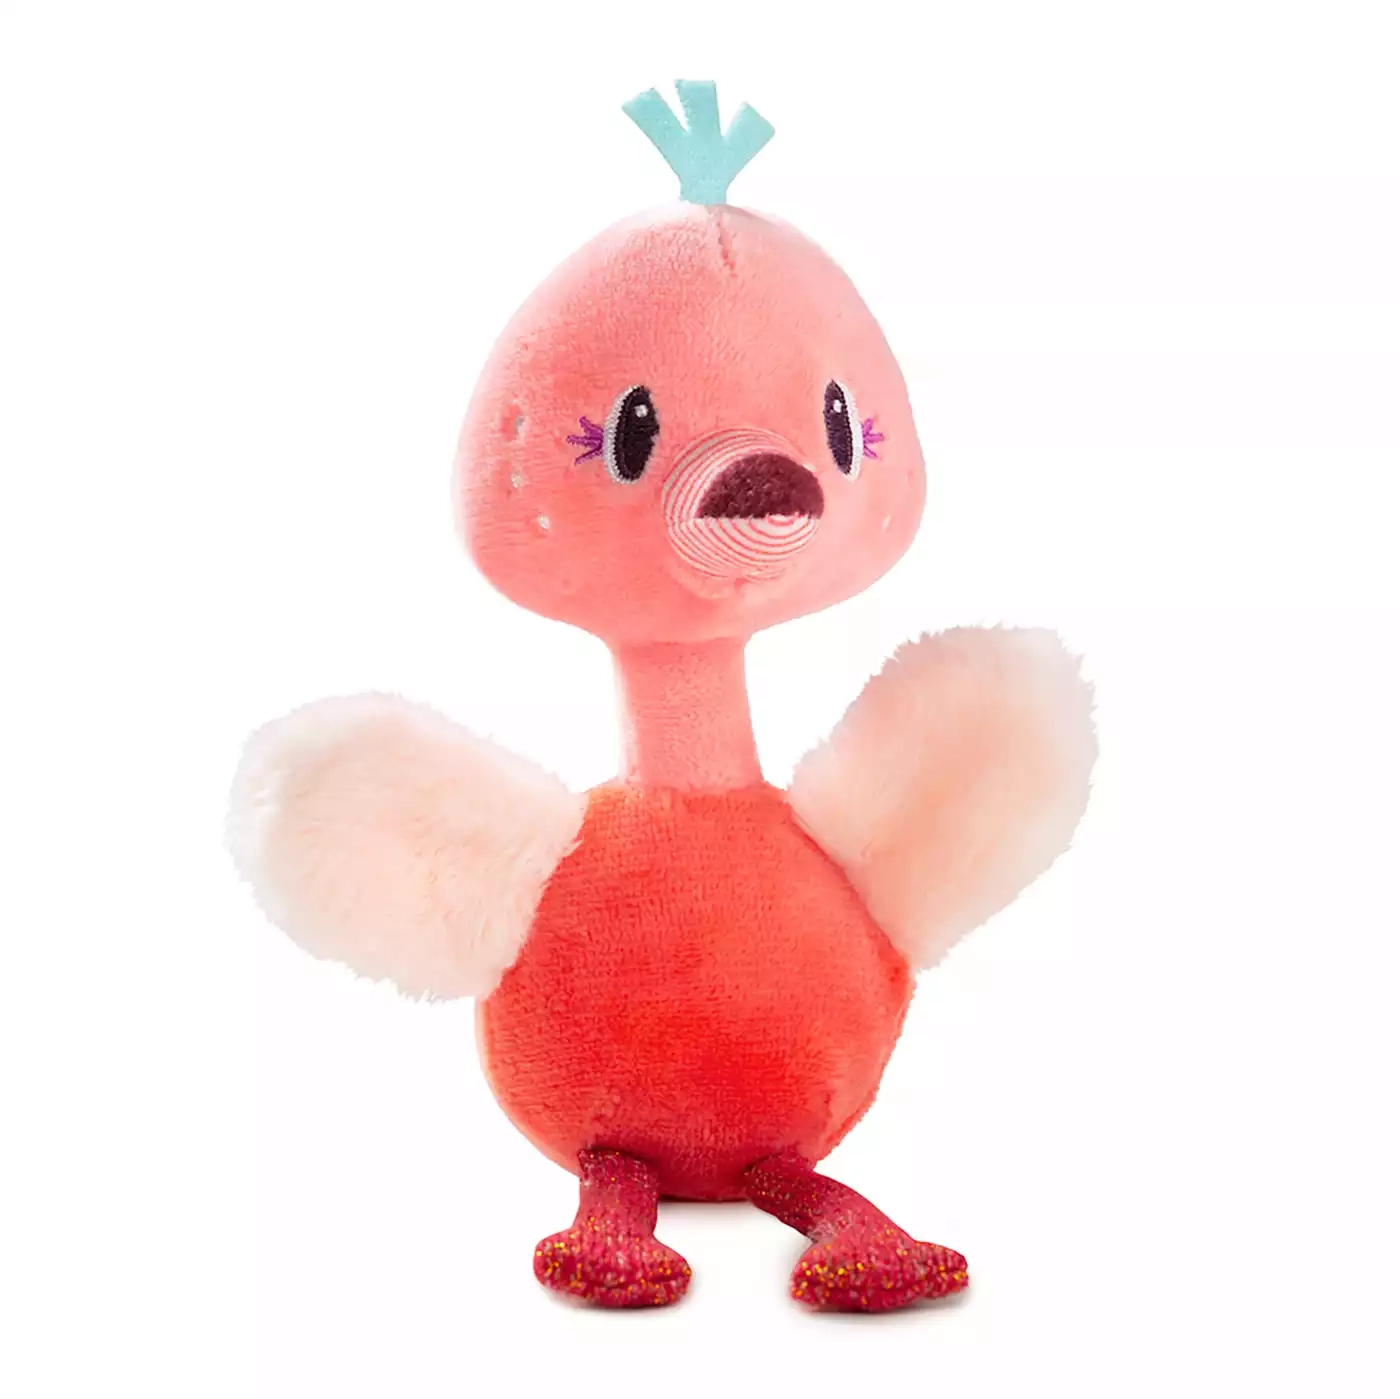 Minifigur Flamingo Anaïs Lilliputiens 2000578219840 1